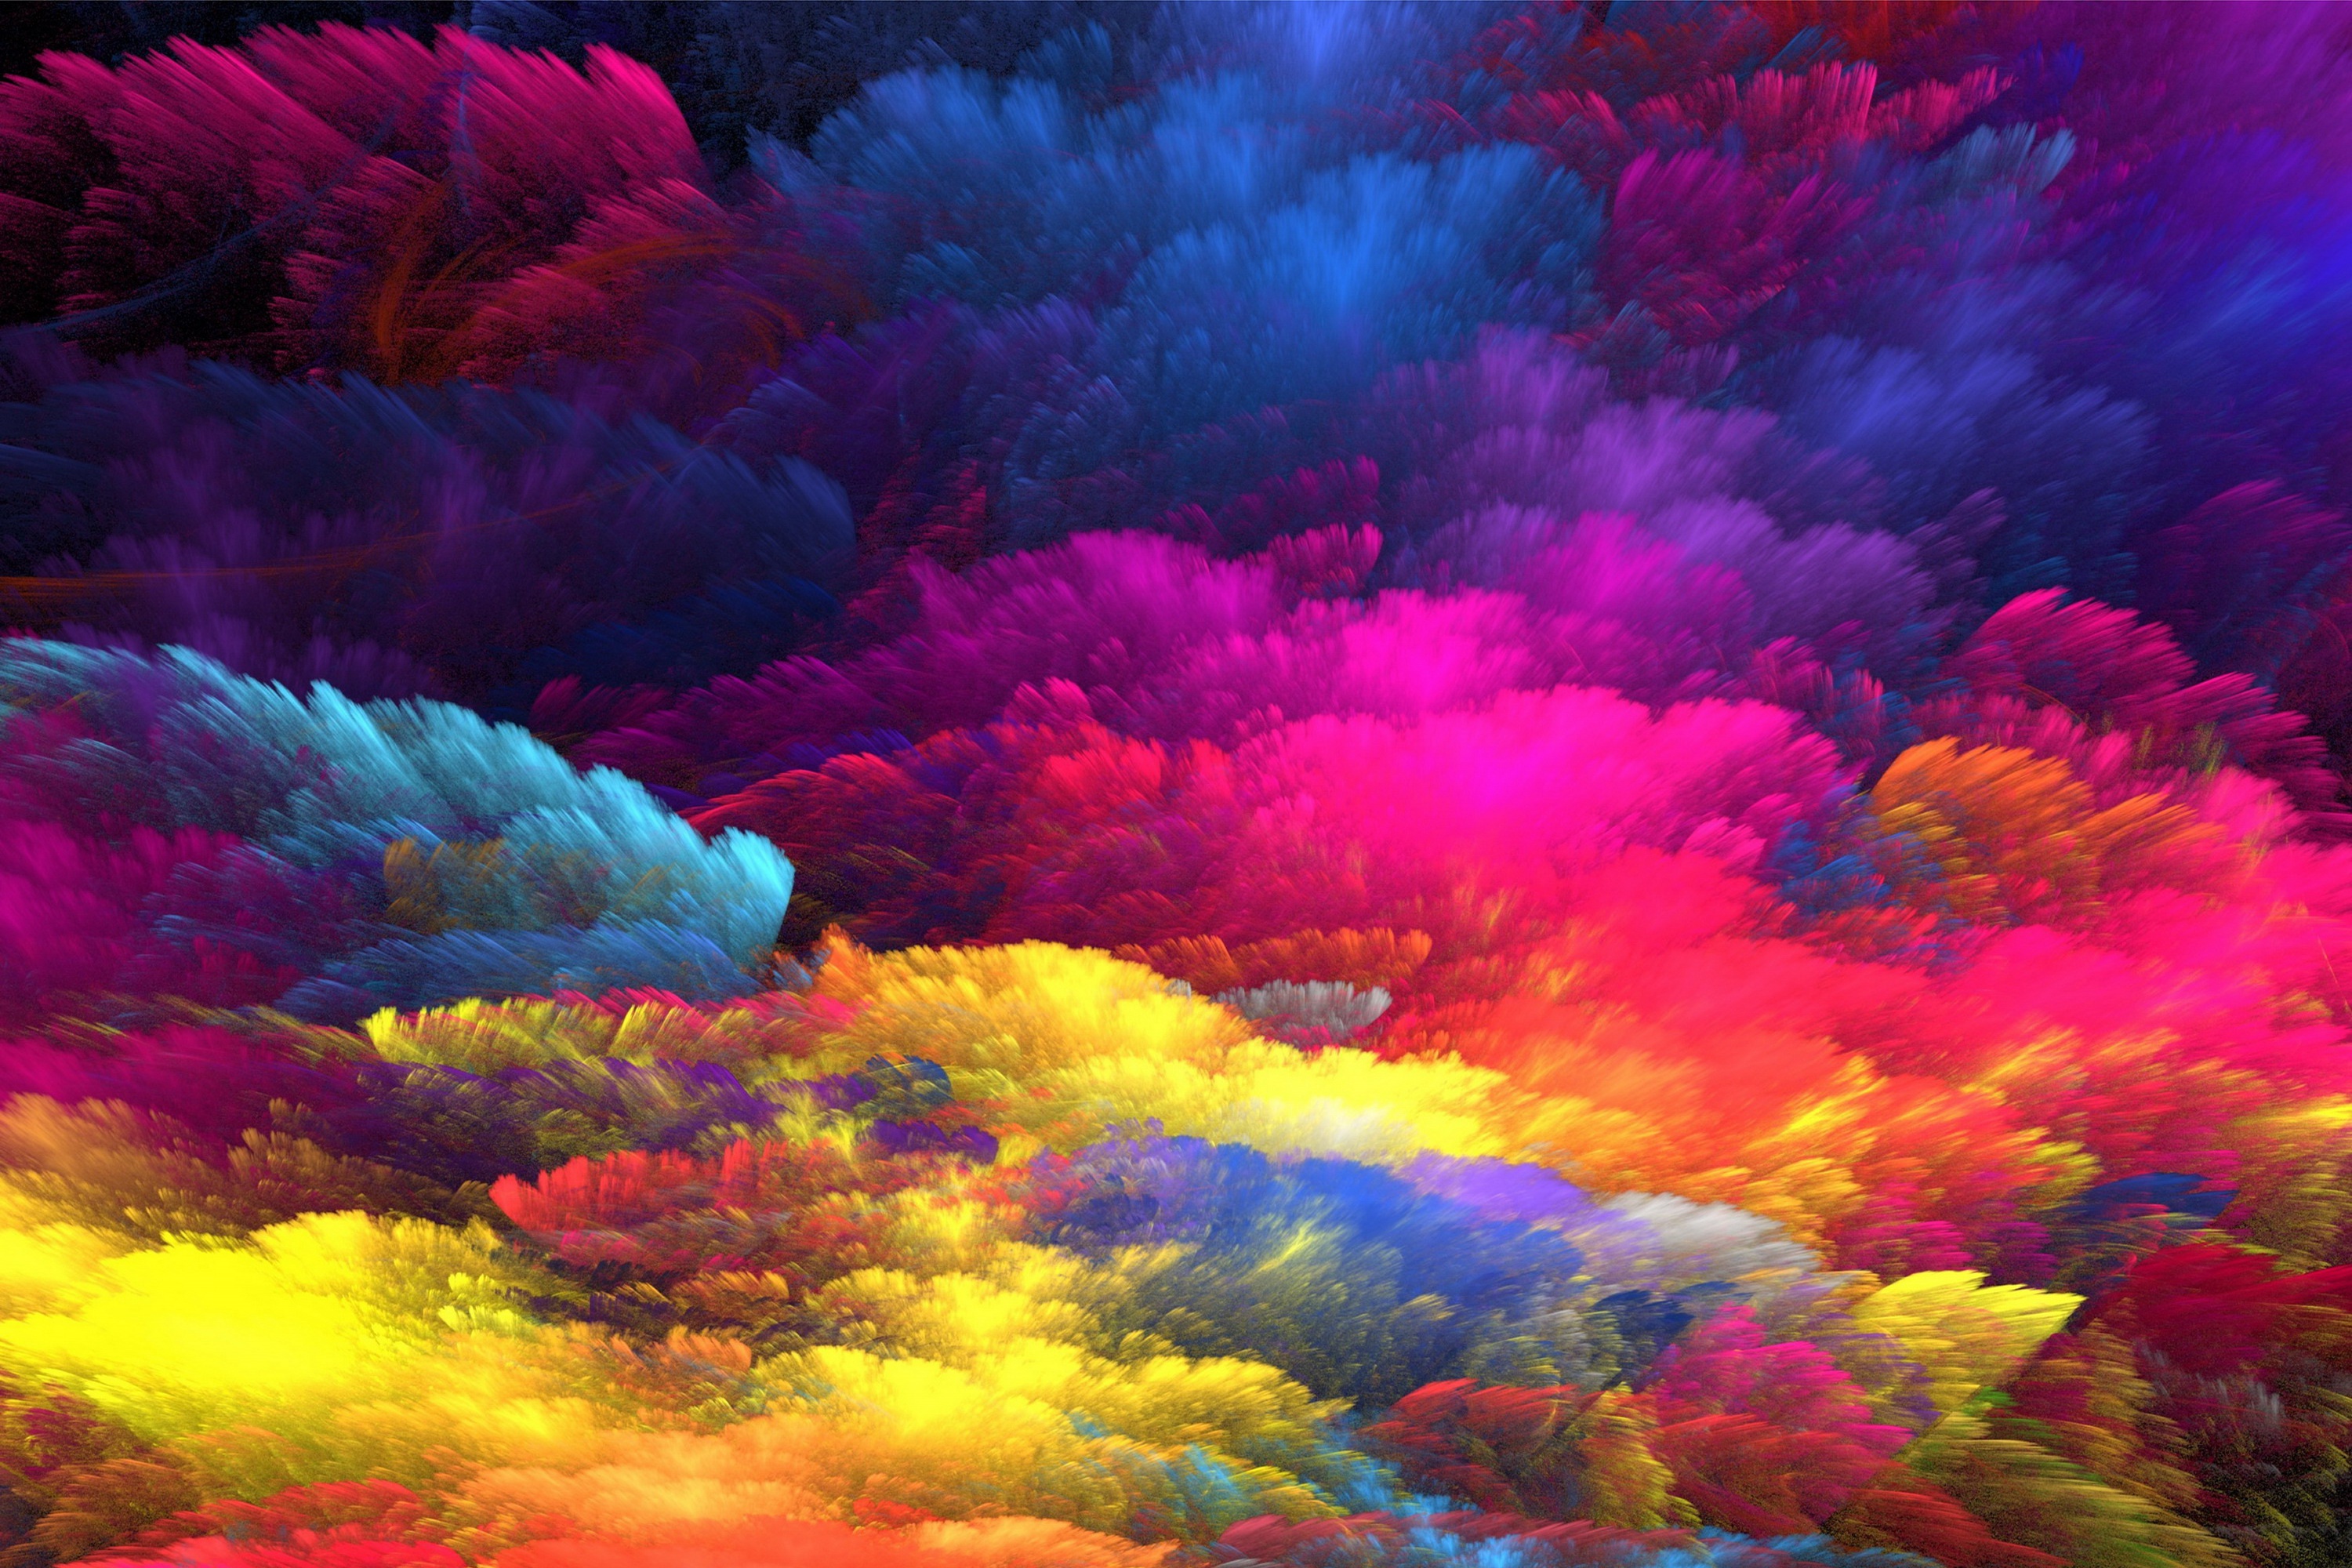 Tải + Download hình nghệ thuật Sắc Màu (Colors) 4k Ultra full hd